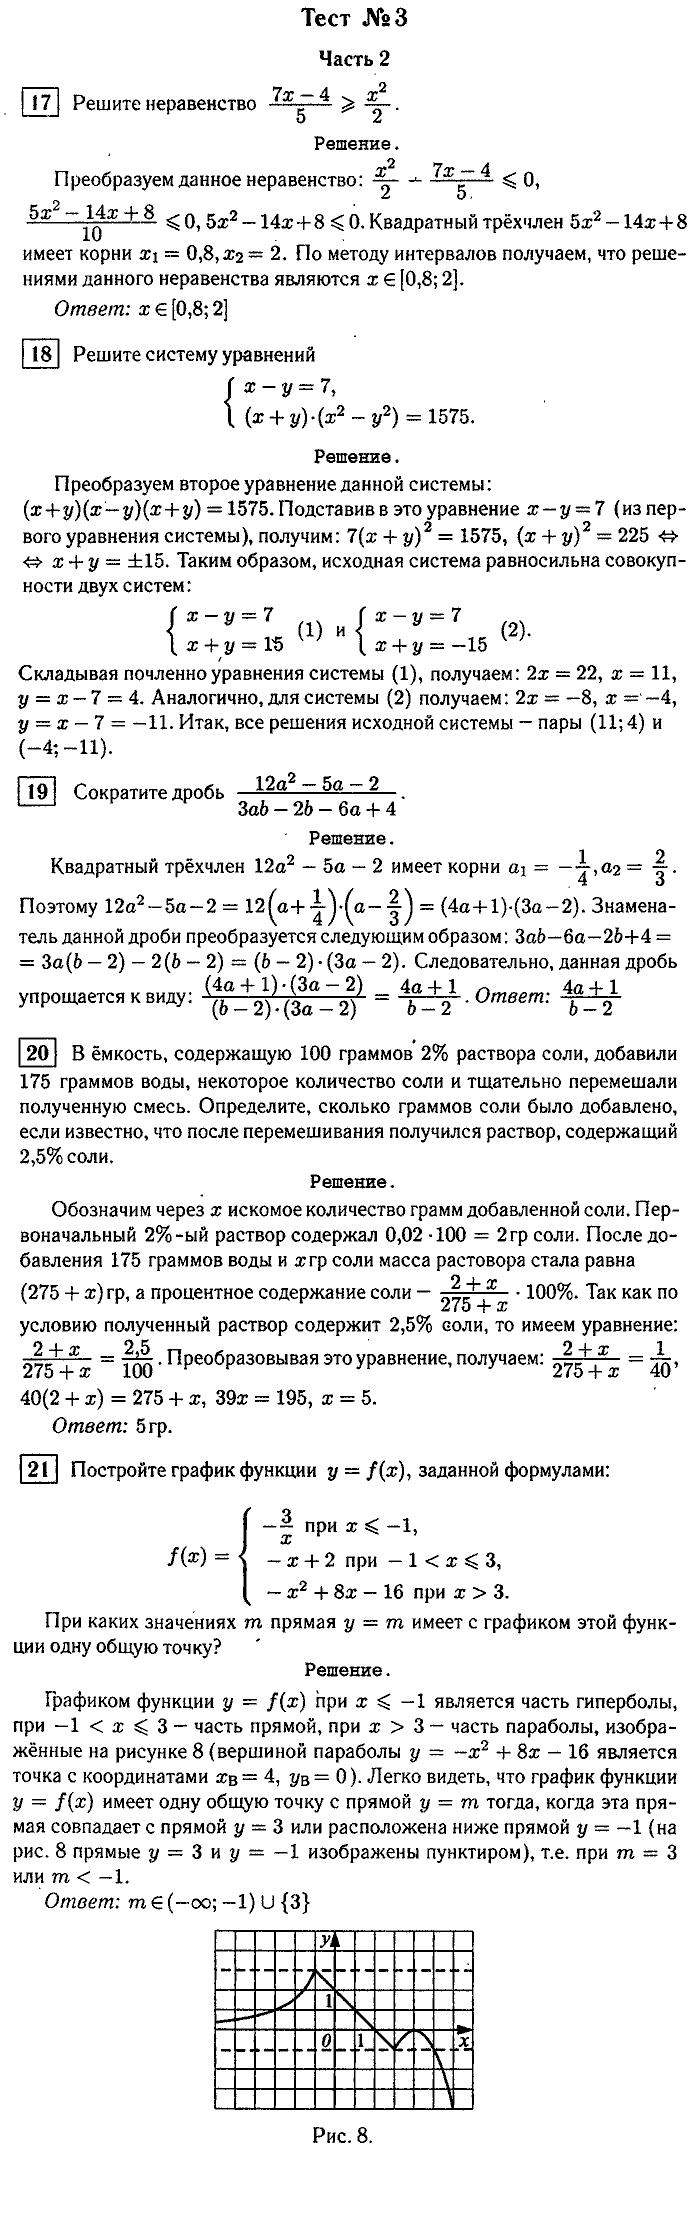 Итоговая аттестация, 9 класс, Мальцева, 2010, §3. Решение тестов 2007 г. Задание: Тест №3